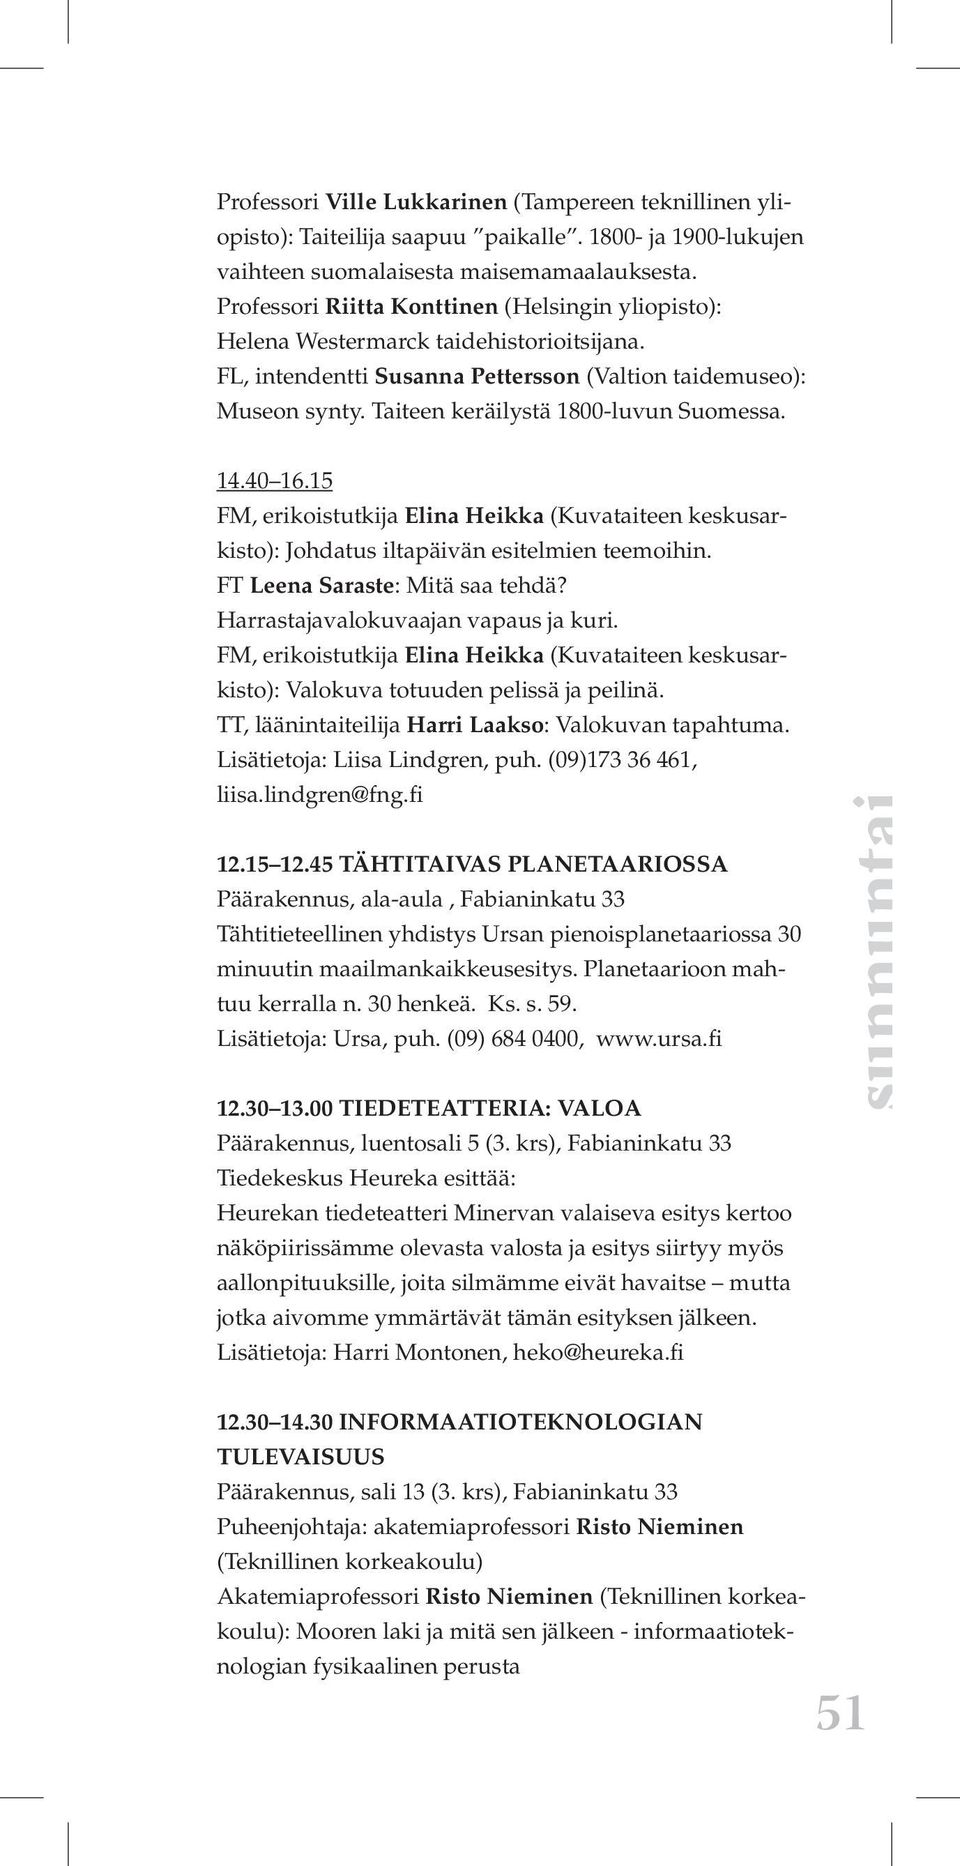 Taiteen keräilystä 1800-luvun Suomessa. 14.40 16.15 FM, erikoistutkija Elina Heikka (Kuvataiteen keskusarkisto): Johdatus iltapäivän esitelmien teemoihin. FT Leena Saraste: Mitä saa tehdä?